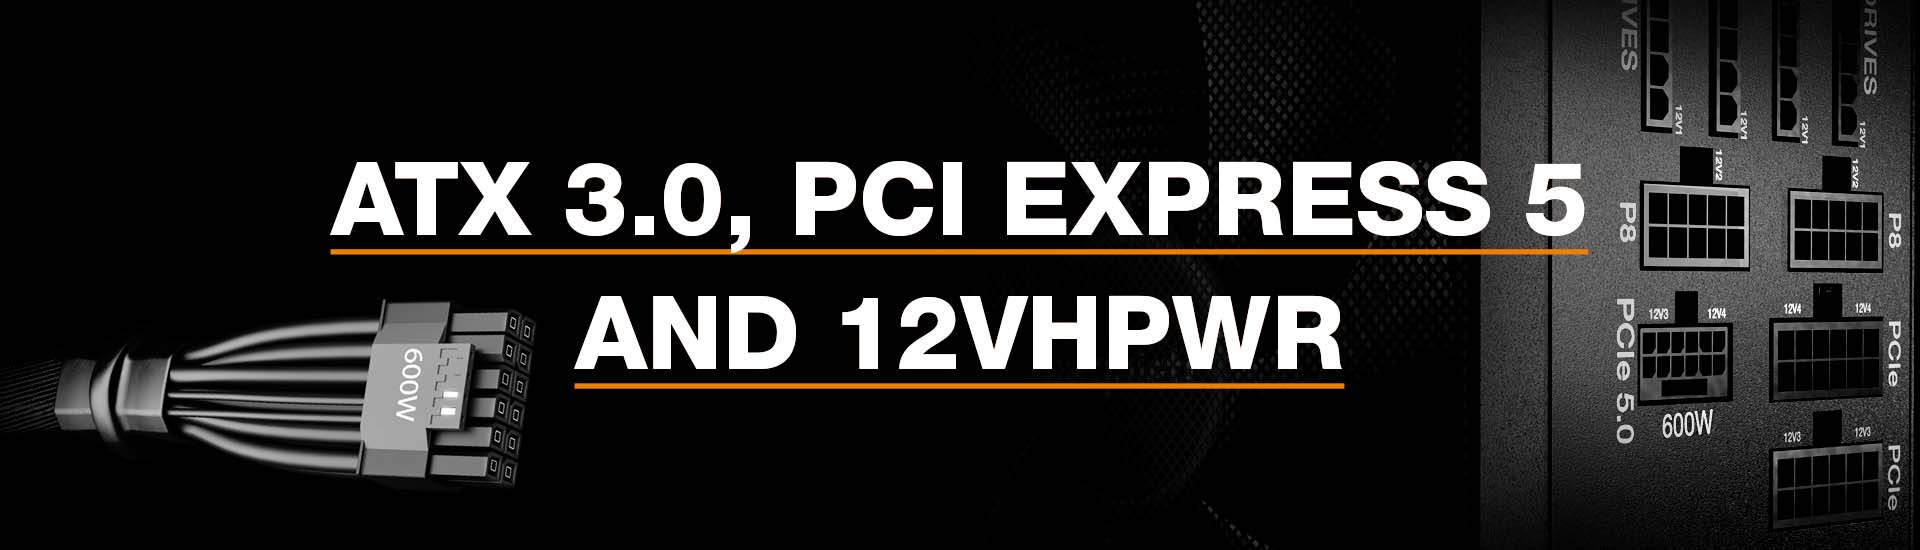 ATX 3.0, PCI Express 5 and 12VHPWR